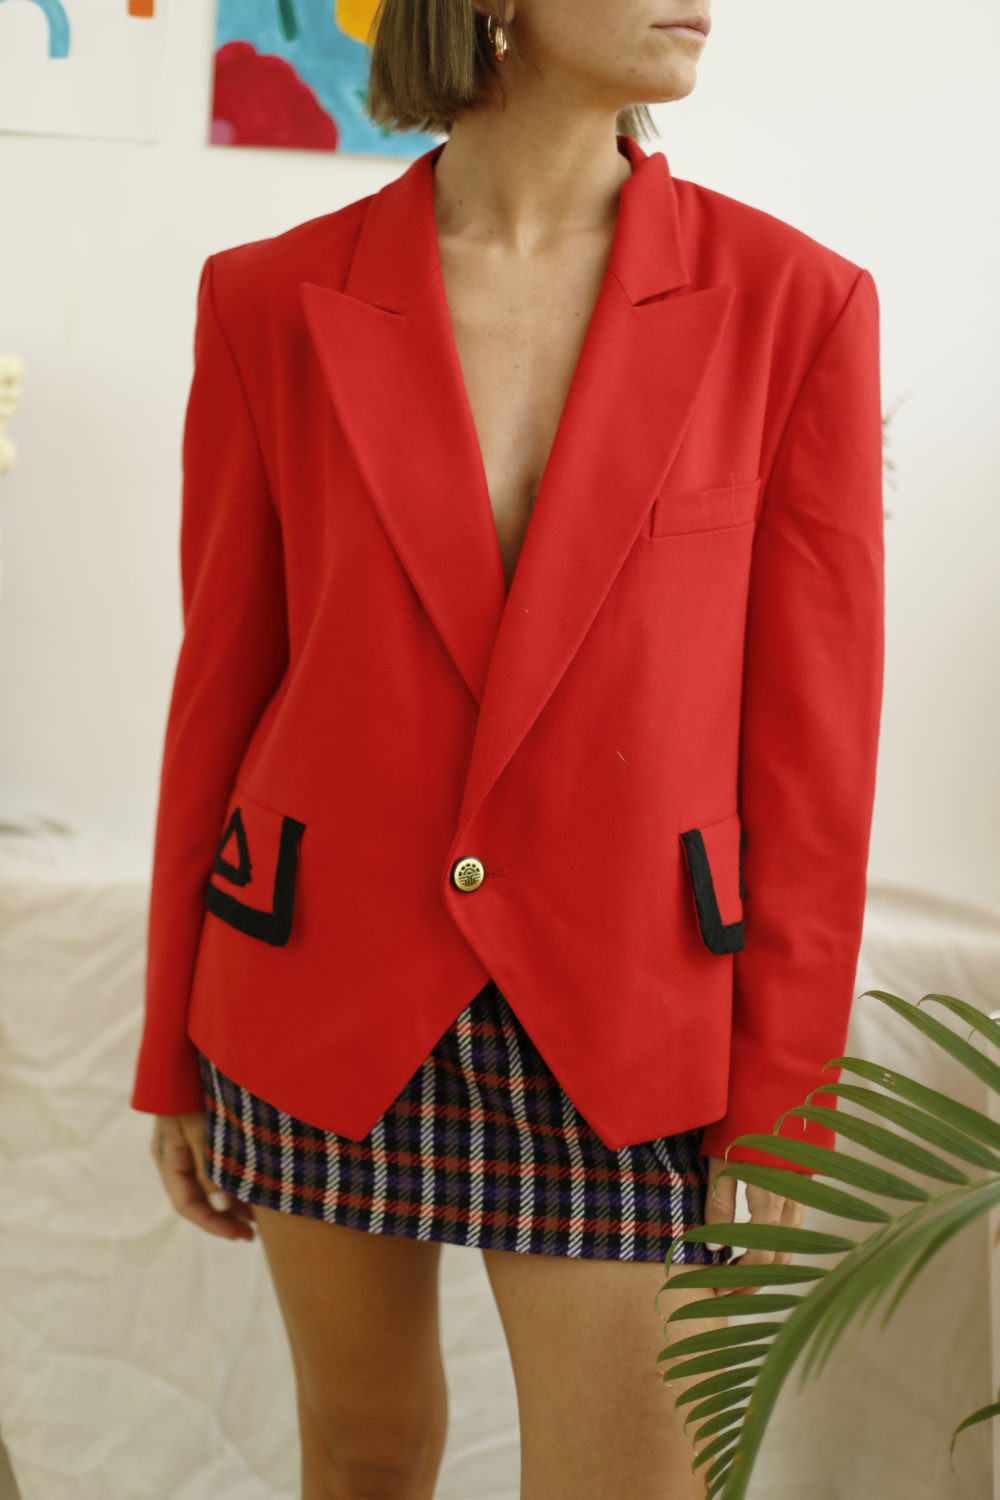 veste rouge vintage